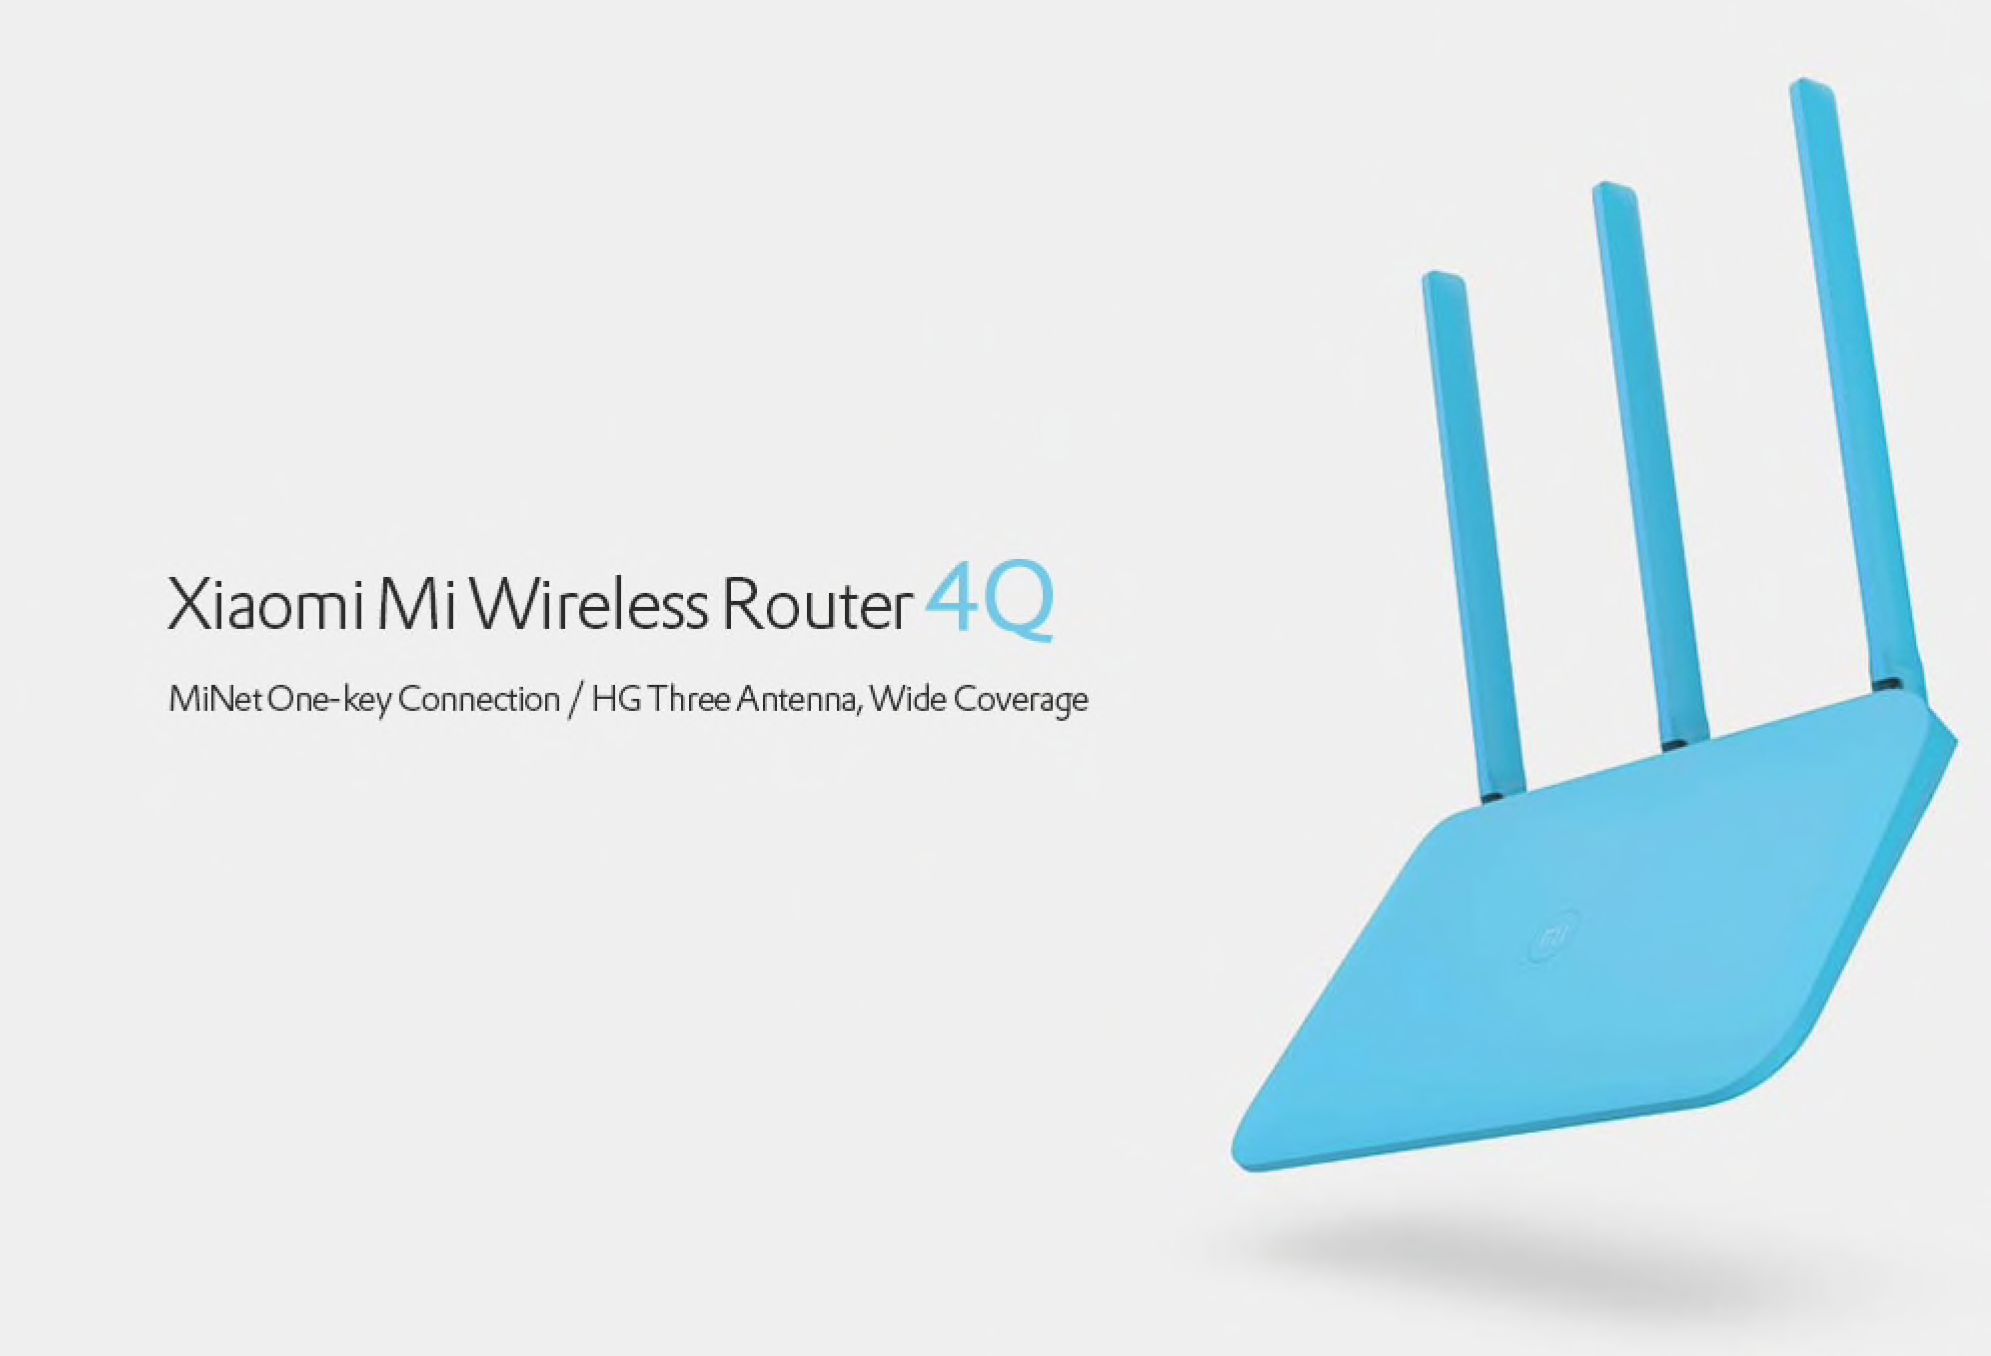 Gearbest: Originální Xiaomi Mi 4Q router za nejnižší cenu na trhu! [sponzorovaný článek]